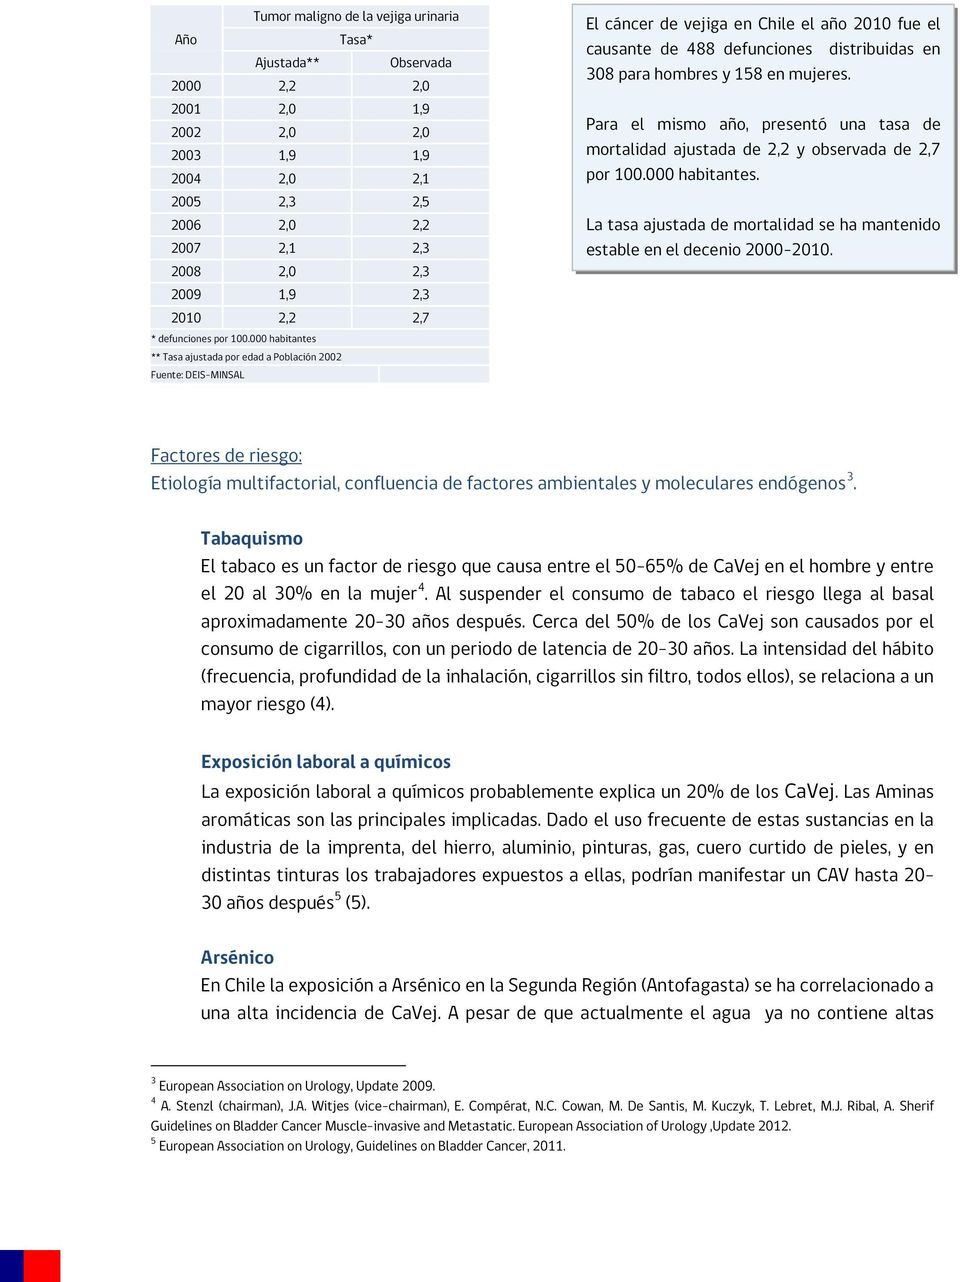 000 habitantes ** Tasa ajustada por edad a Población 2002 Fuente: DEIS-MINSAL El cáncer de vejiga en Chile el año 2010 fue el causante de 488 defunciones distribuidas en 308 para hombres y 158 en